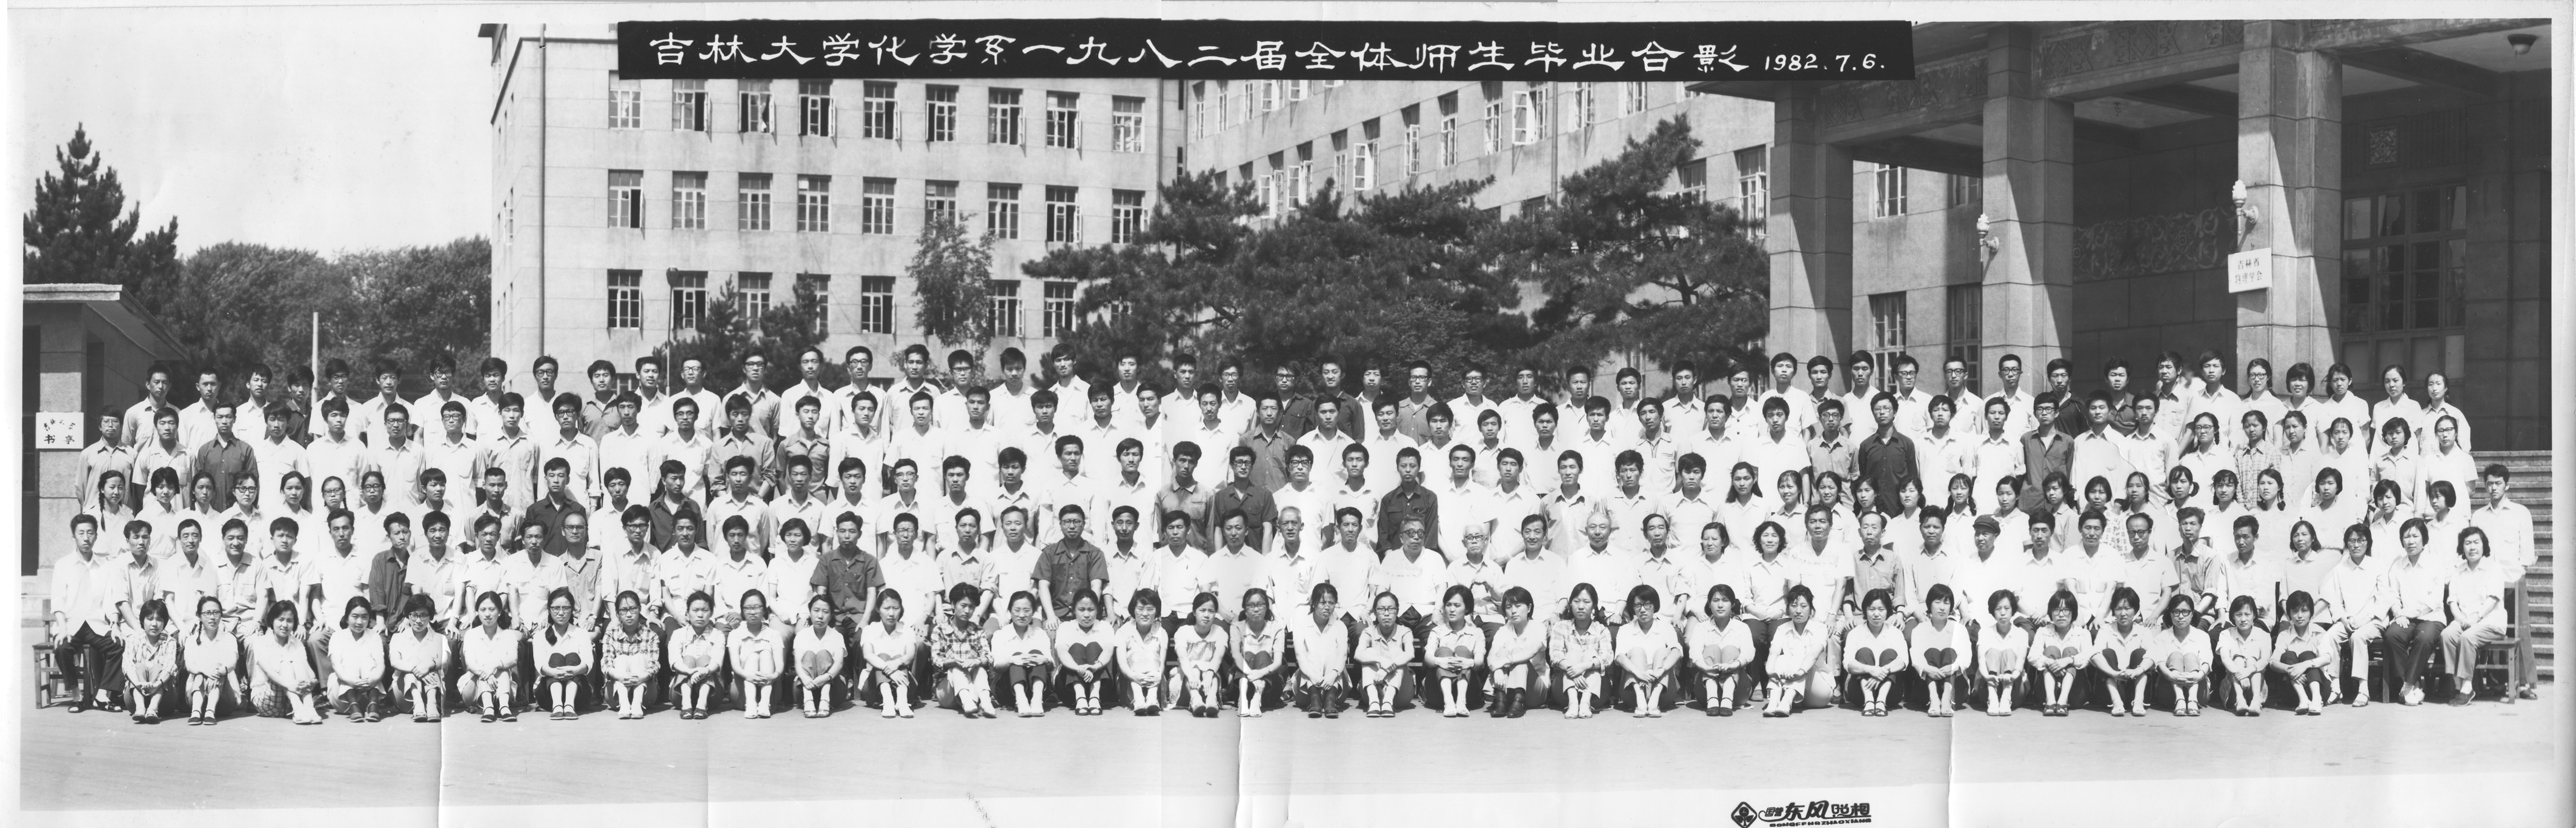 腾讯nba买球化学系1982届全体师生毕业合影